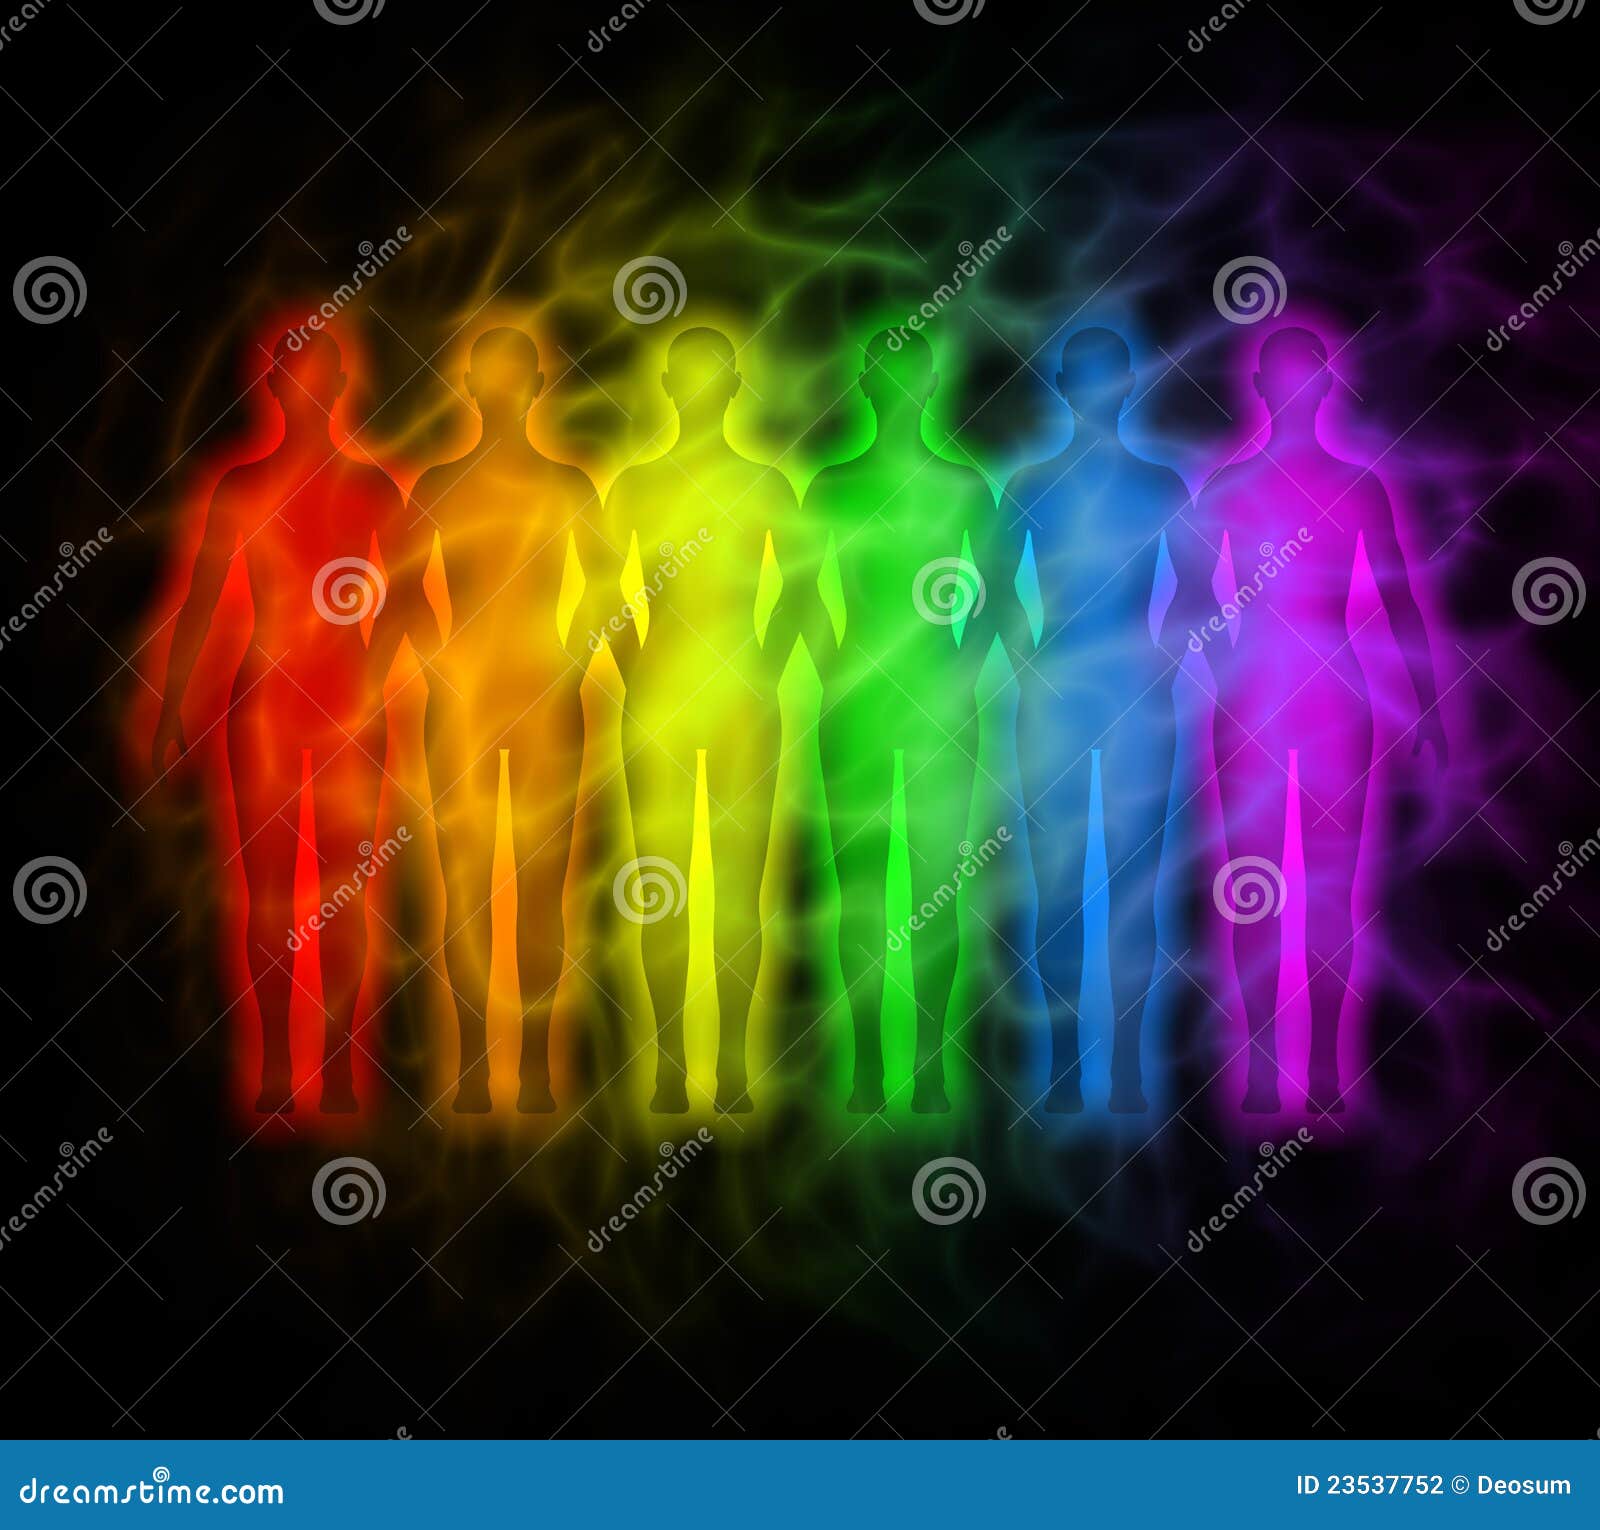 povos-do-arco-íris-silhuetas-do-arco-íris-da-aura-humana-23537752.jpg (1300×1260)